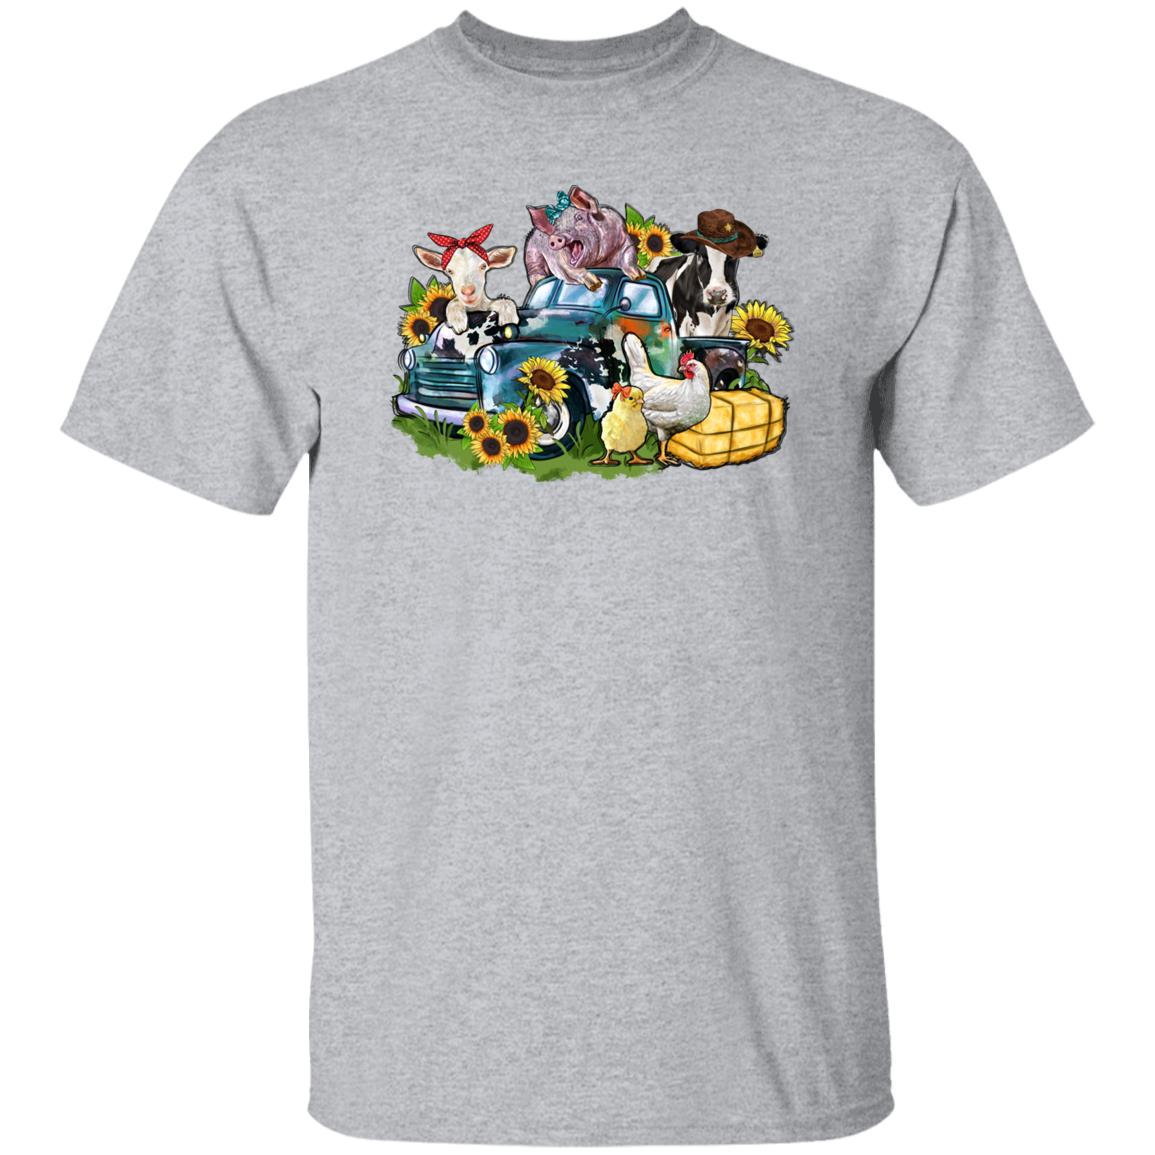 Farm animals truck T-Shirt gift Sunflower cow gig chick goat Farmer Unisex tee Sand White Sport Grey-Family-Gift-Planet